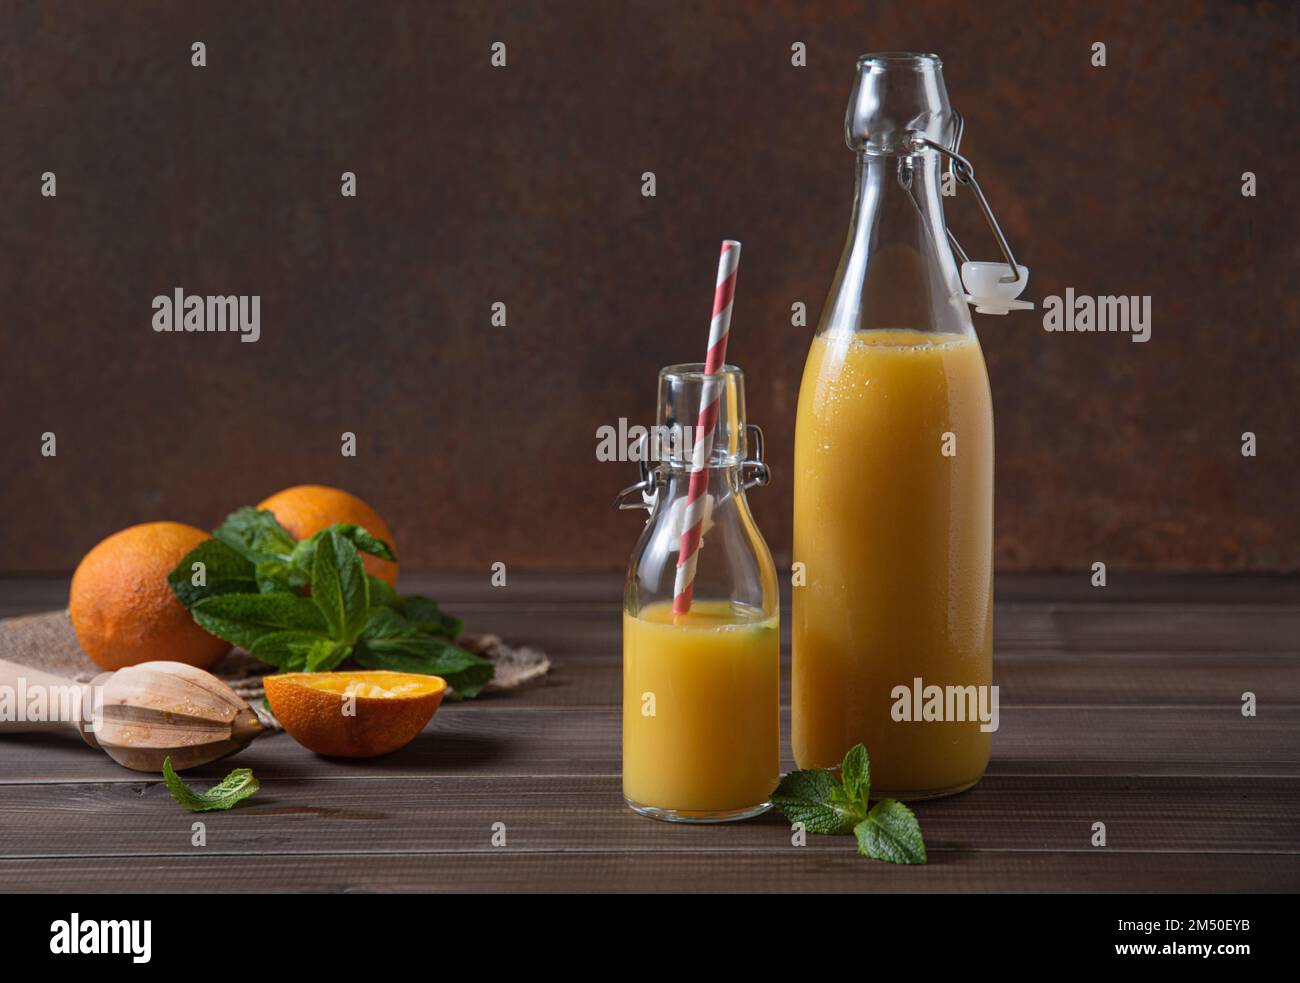 spremuta d'arancia fresca in due bottiglie con agrumi su fondo di legno marrone. Concetto rustico. Immagine vista frontale Foto Stock